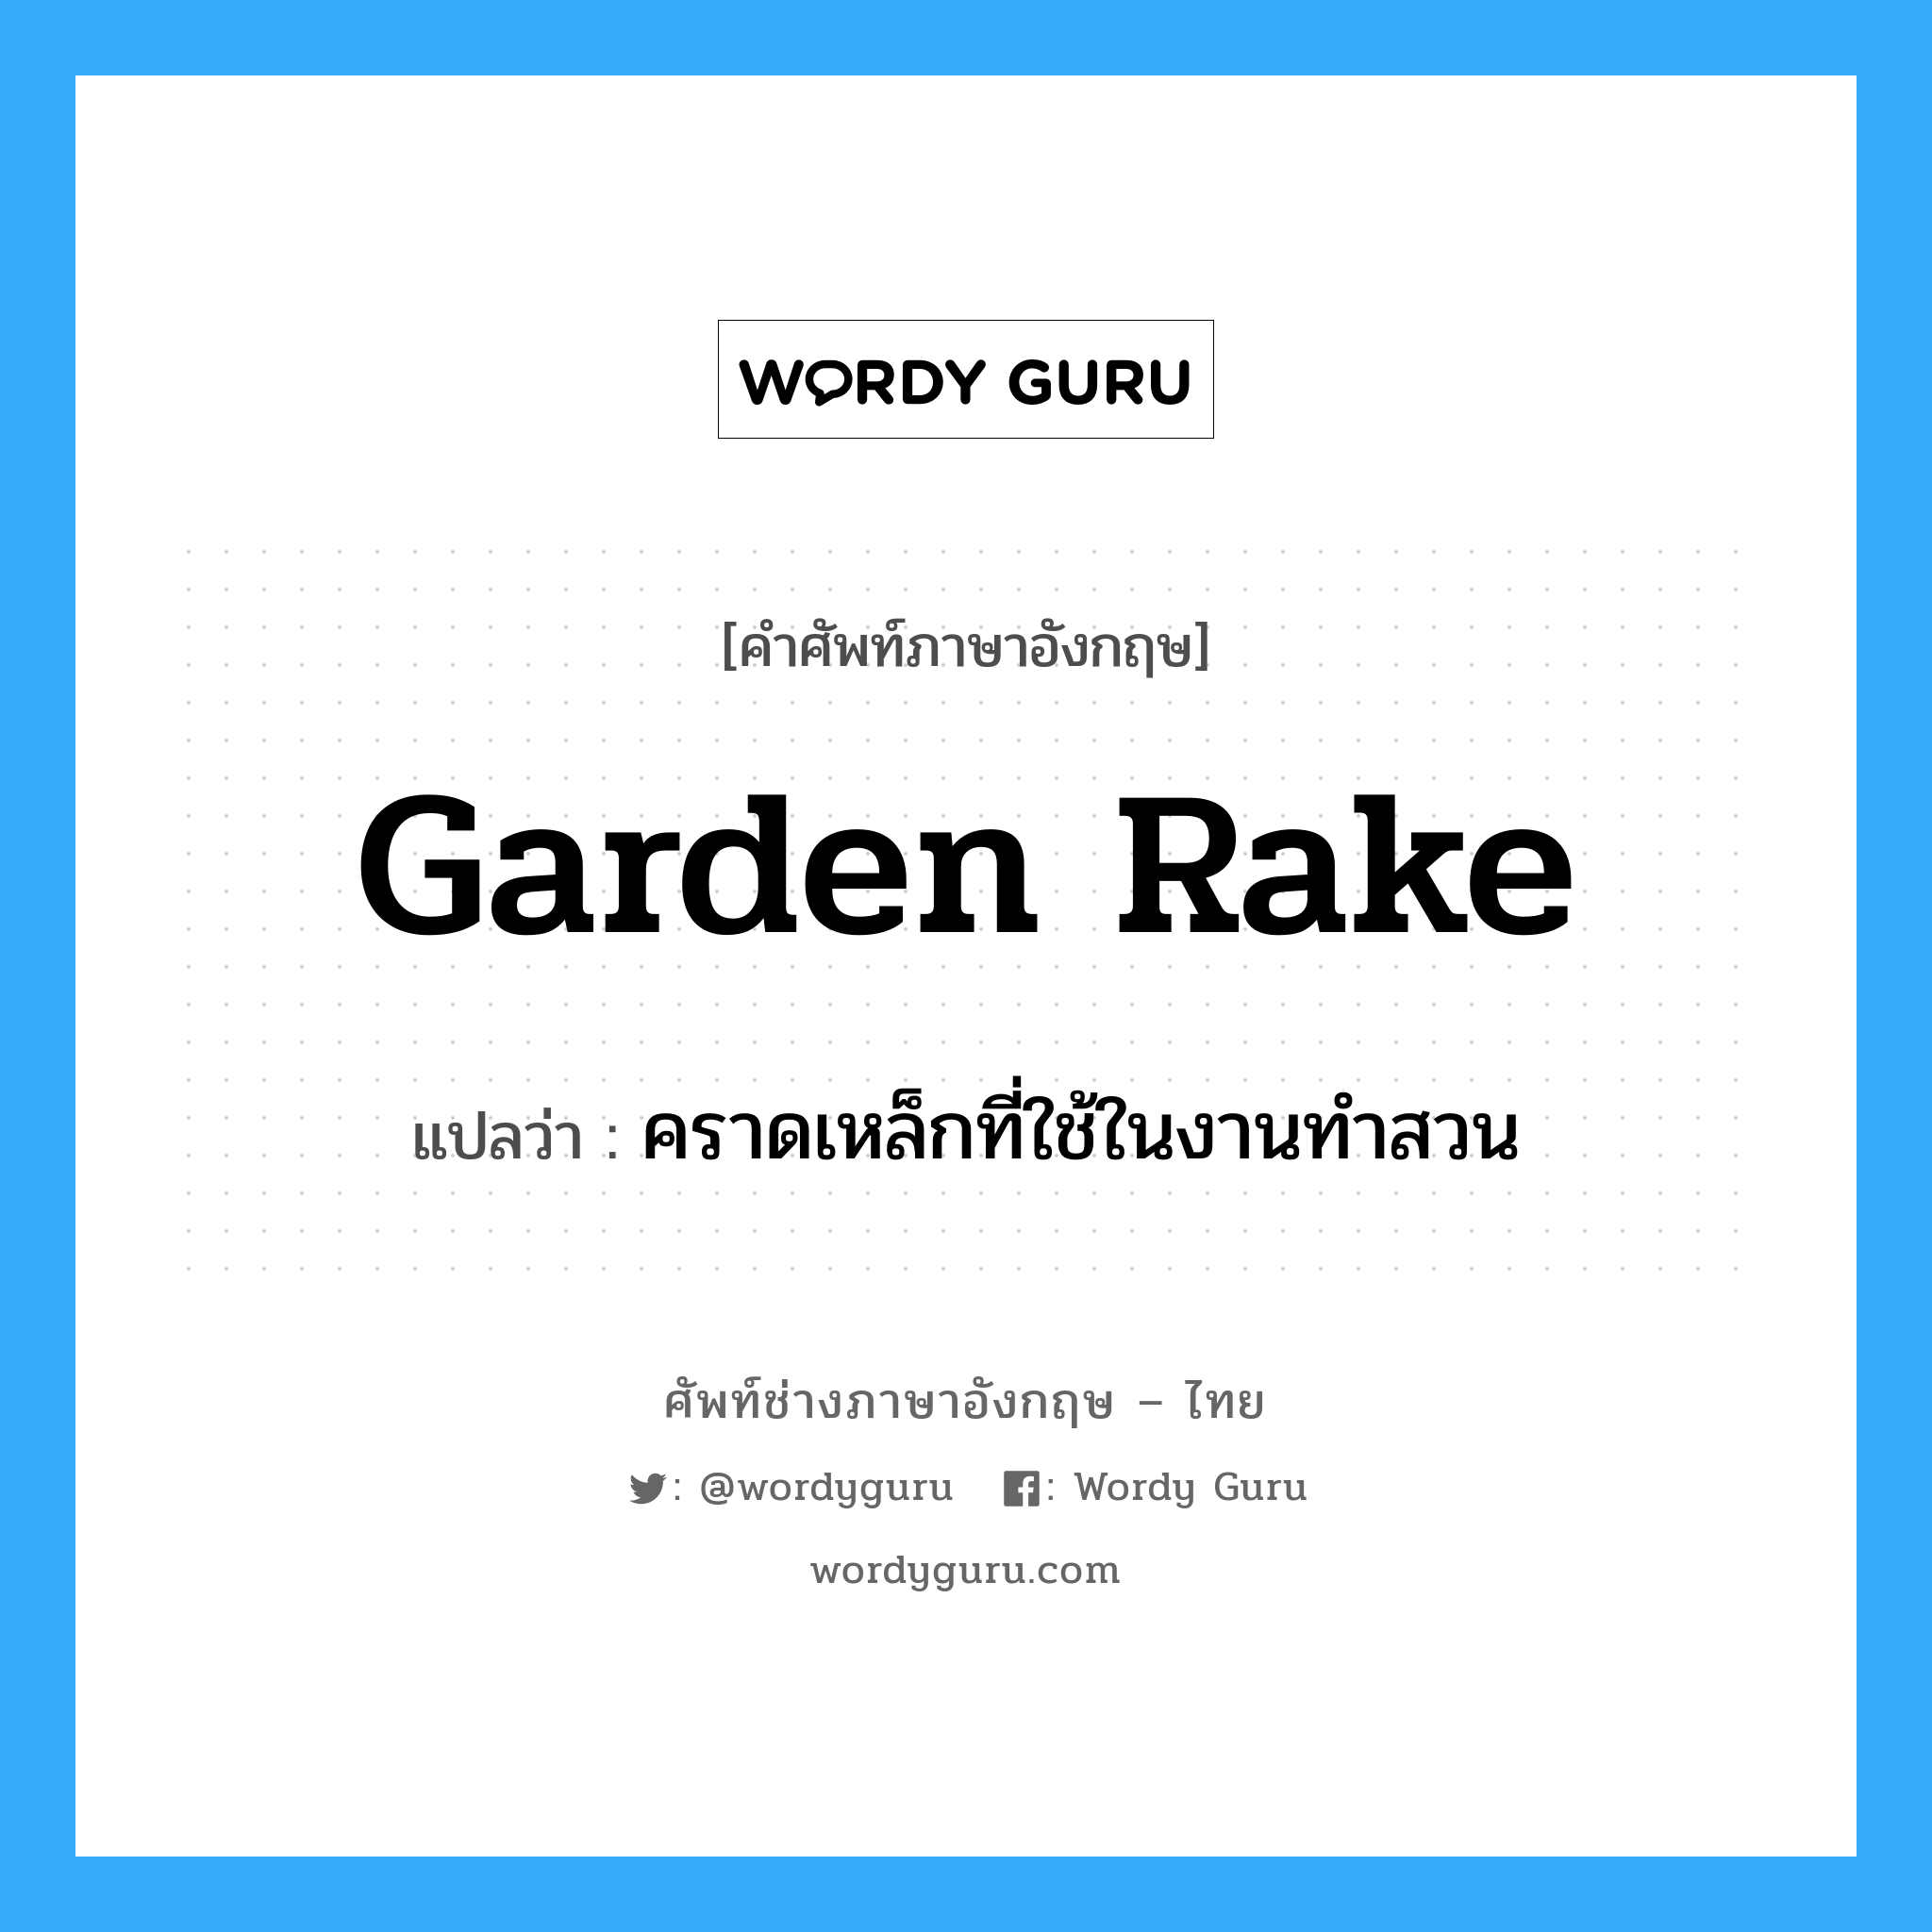 garden rake แปลว่า?, คำศัพท์ช่างภาษาอังกฤษ - ไทย garden rake คำศัพท์ภาษาอังกฤษ garden rake แปลว่า คราดเหล็กที่ใช้ในงานทำสวน